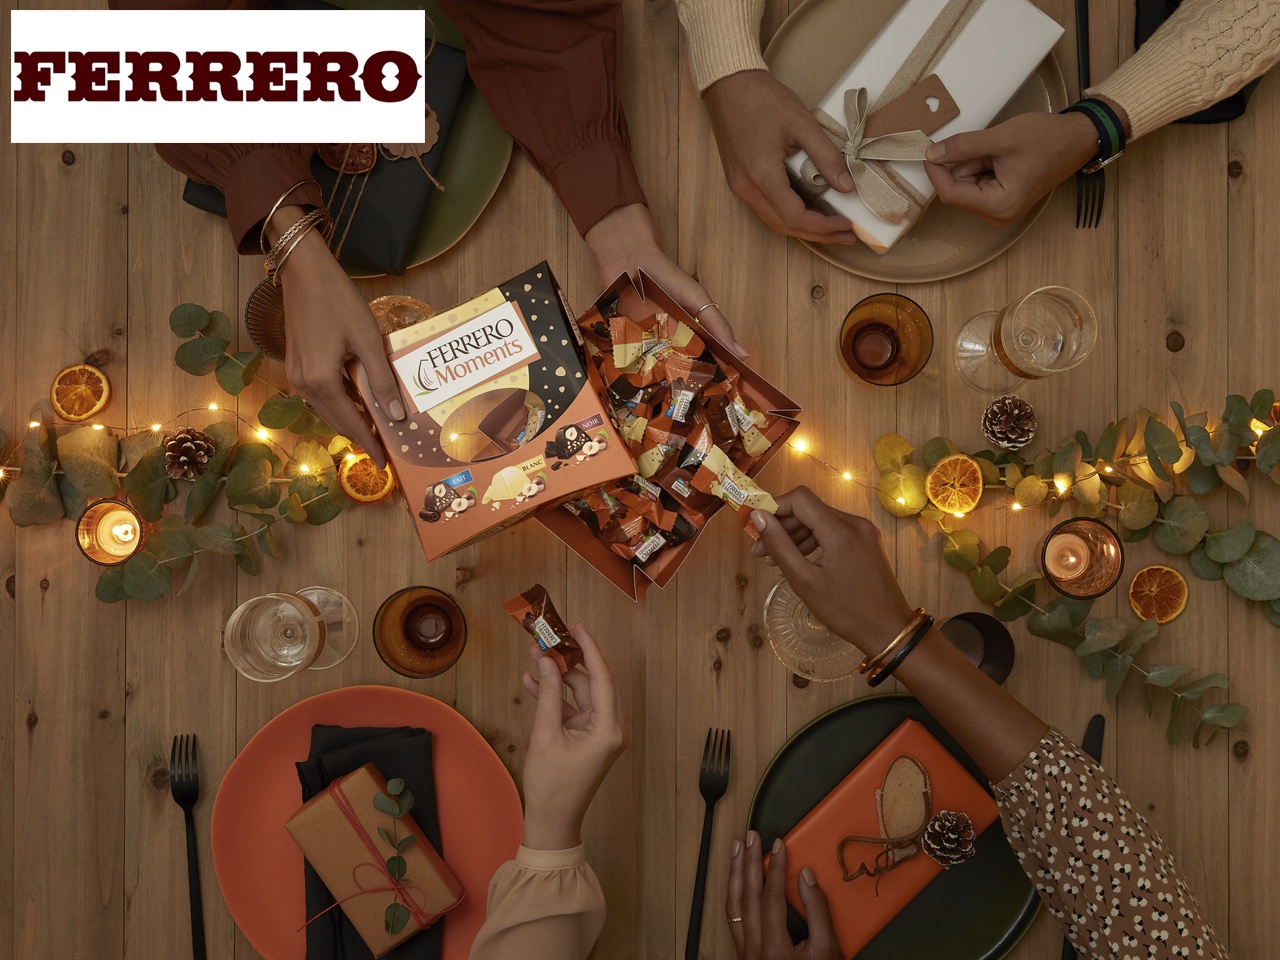 Un Noël avec Ferrero